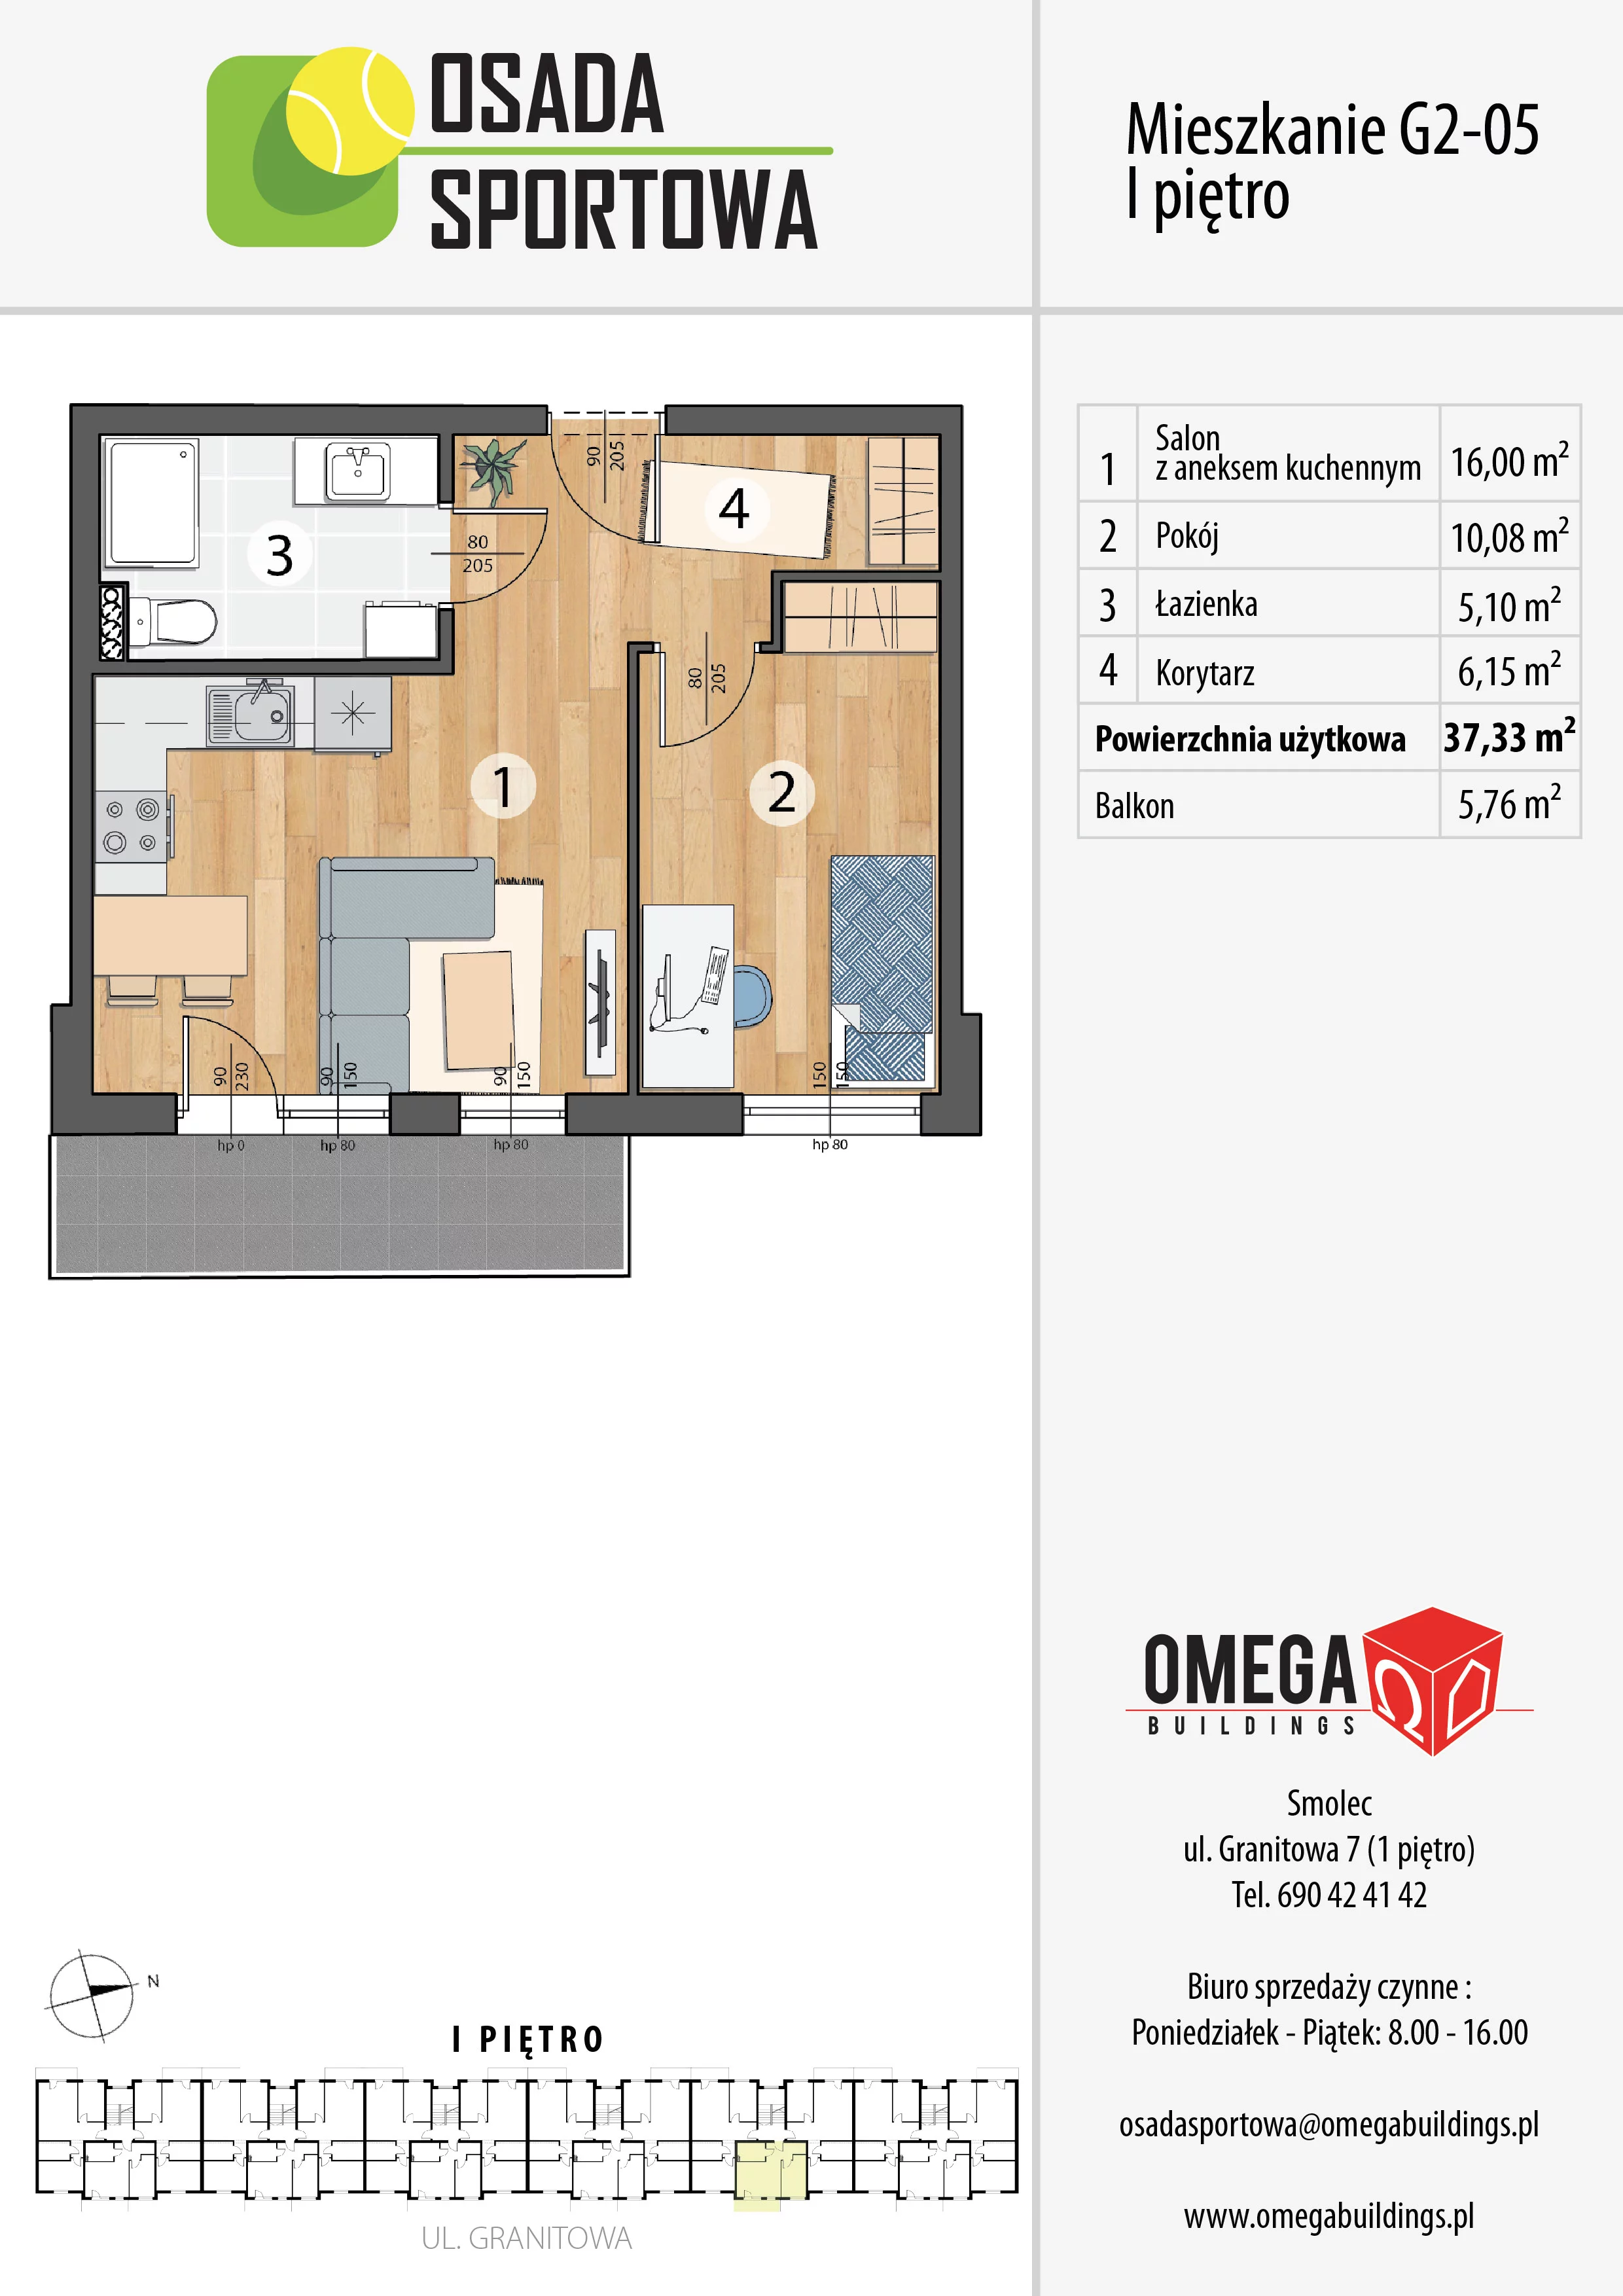 Mieszkanie 37,33 m², piętro 1, oferta nr G2-05, Osada Sportowa Budynek G, Smolec, ul. Granitowa 52-62